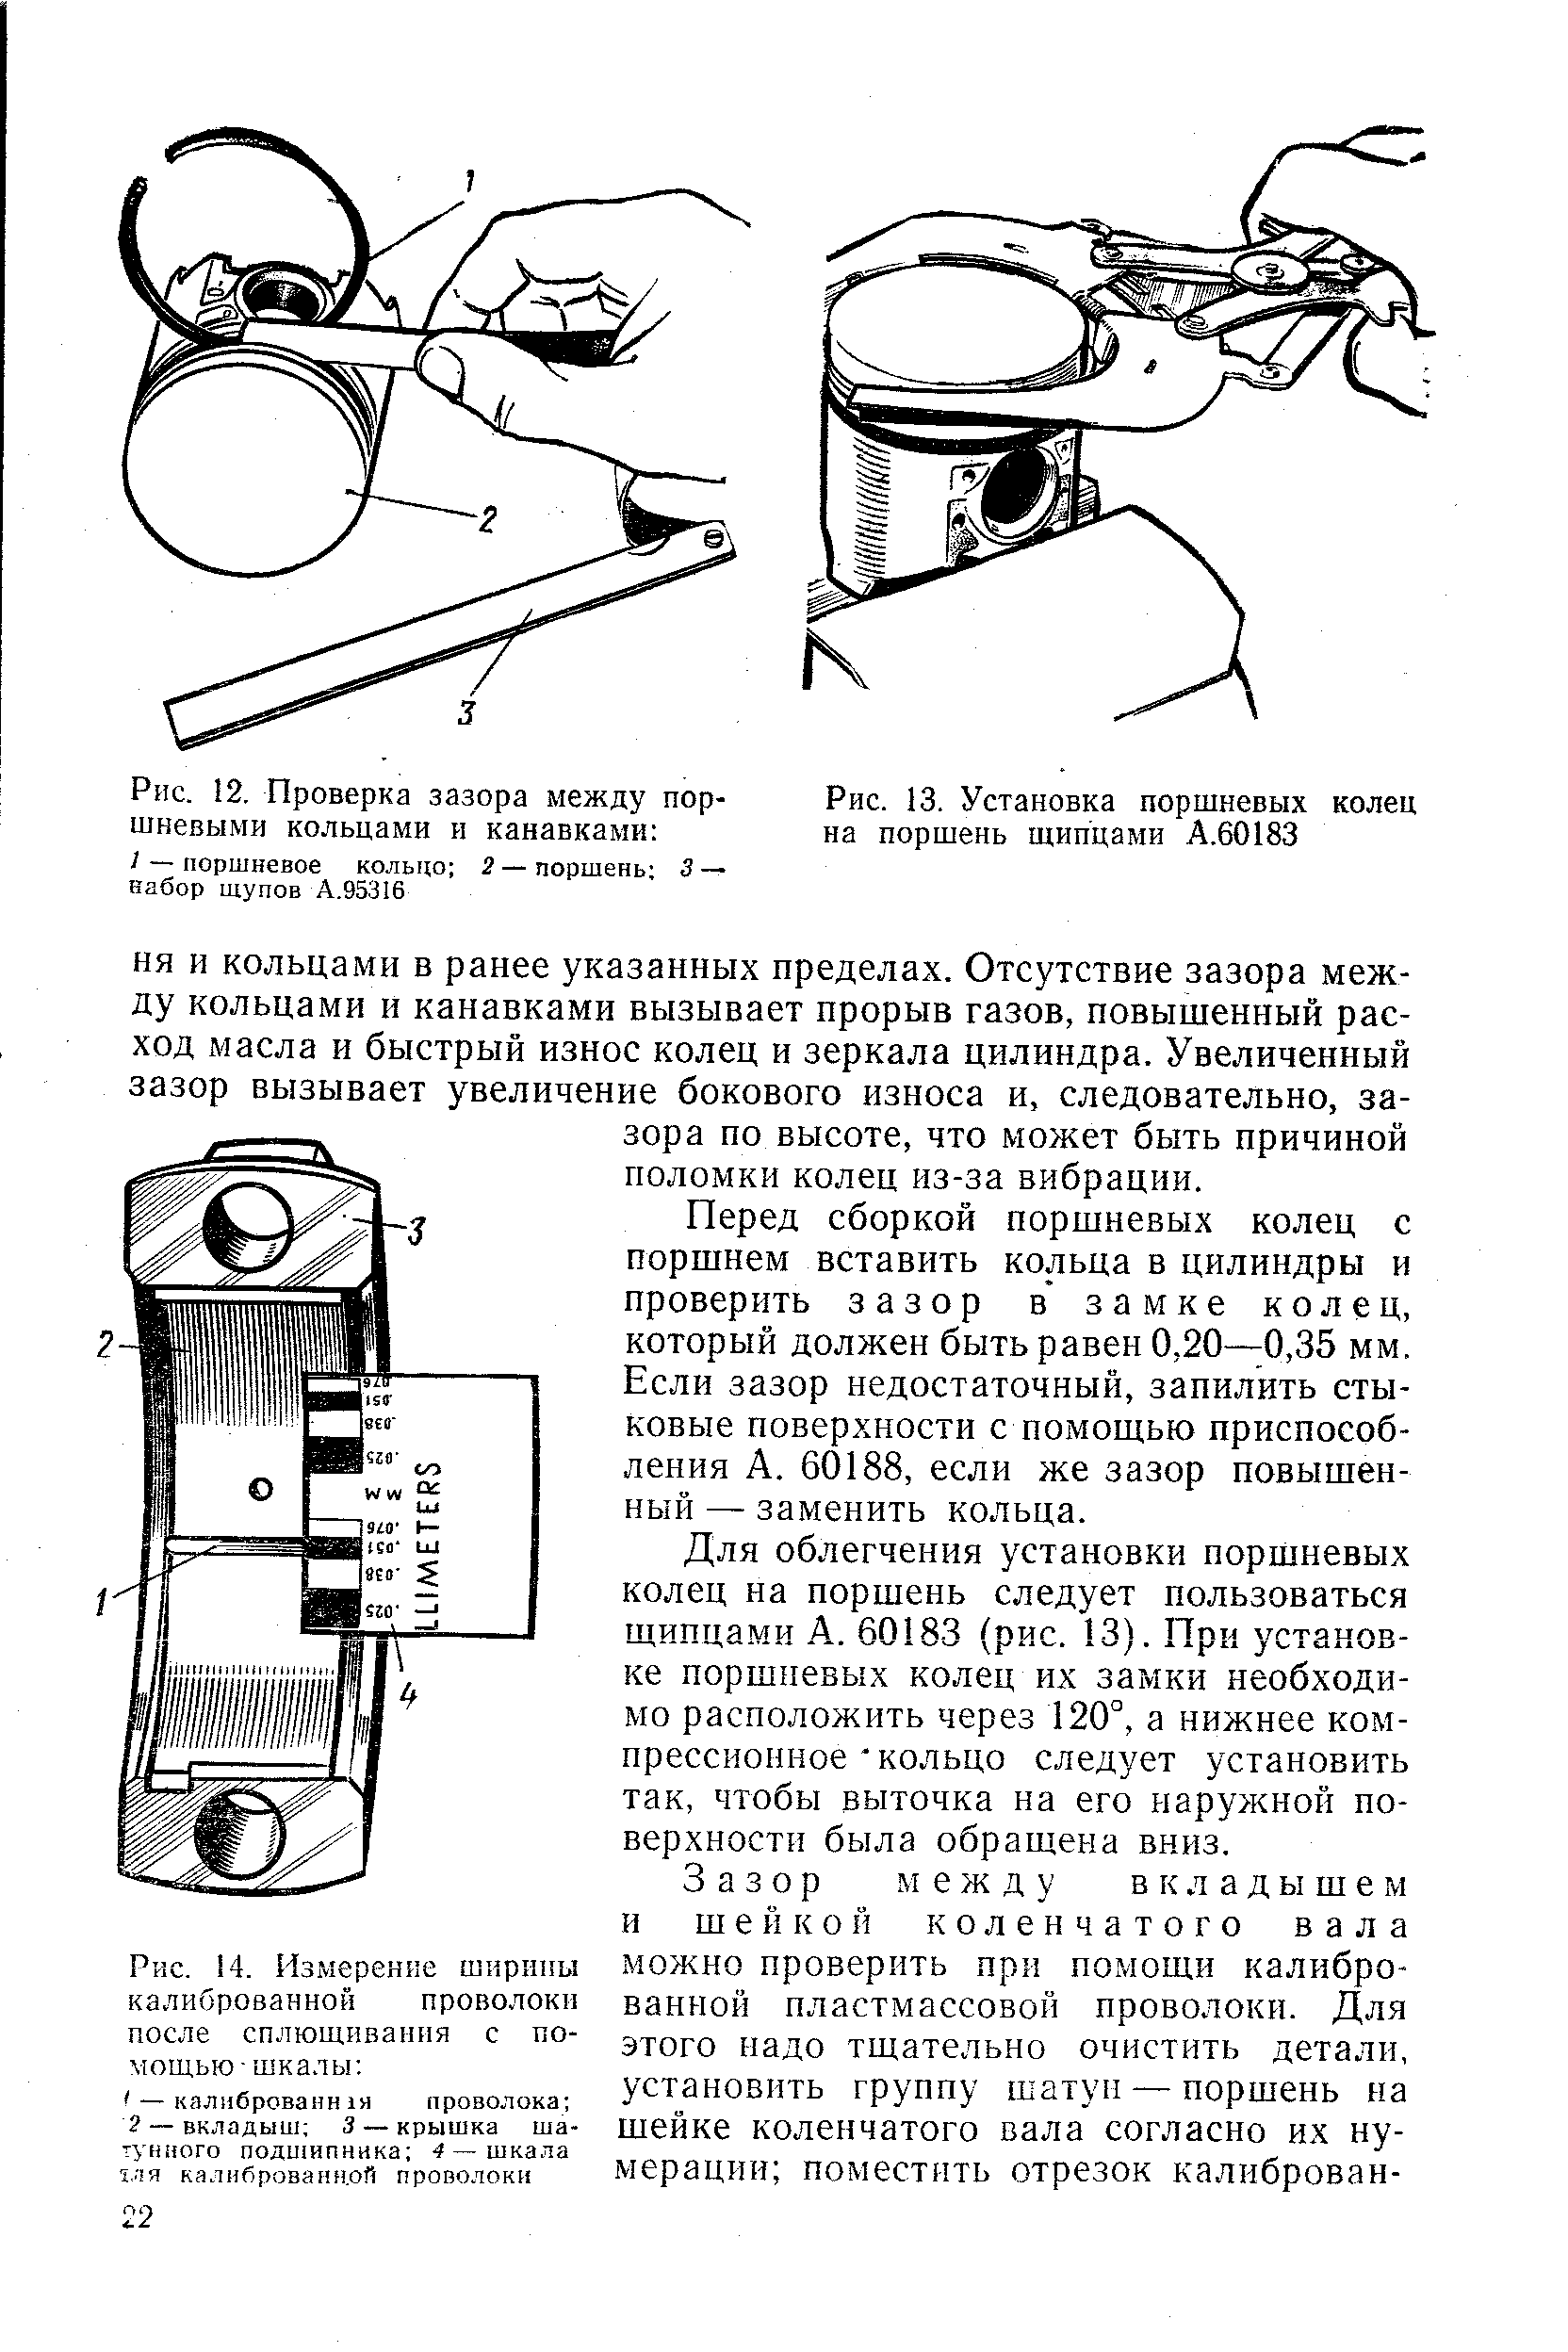 Инструкция по установке поршневых колец